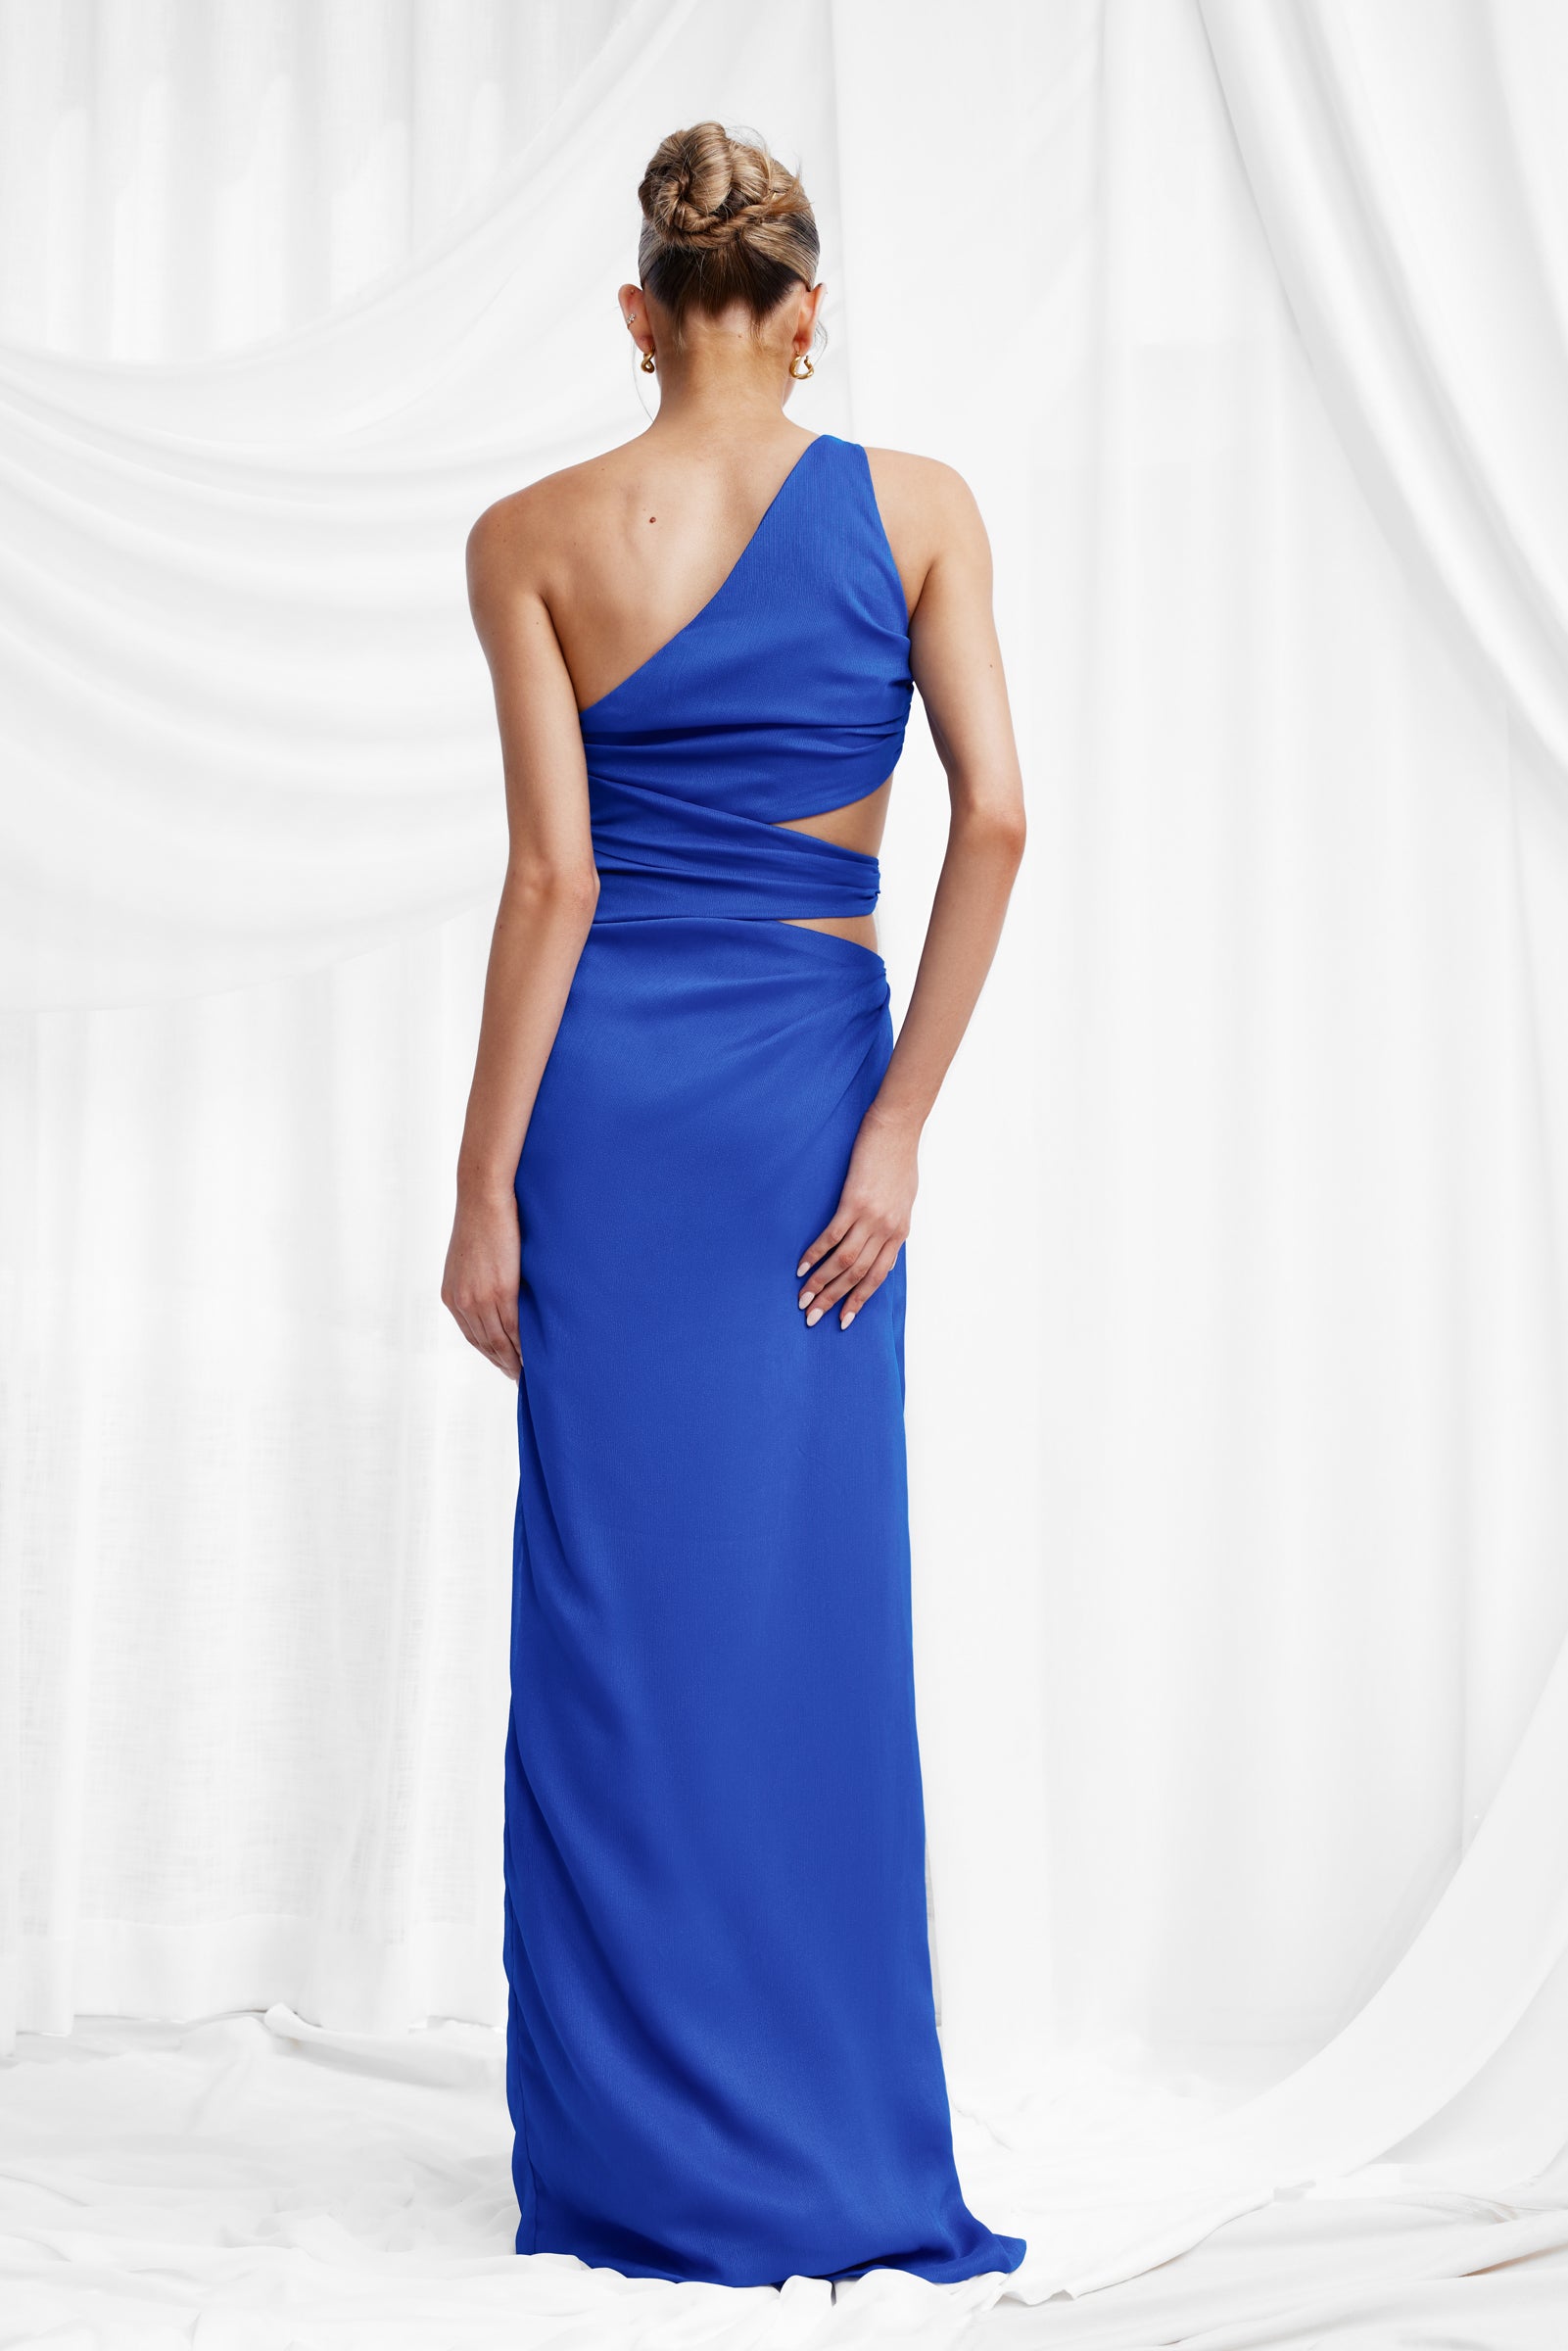 Aurea Dress - Cobalt